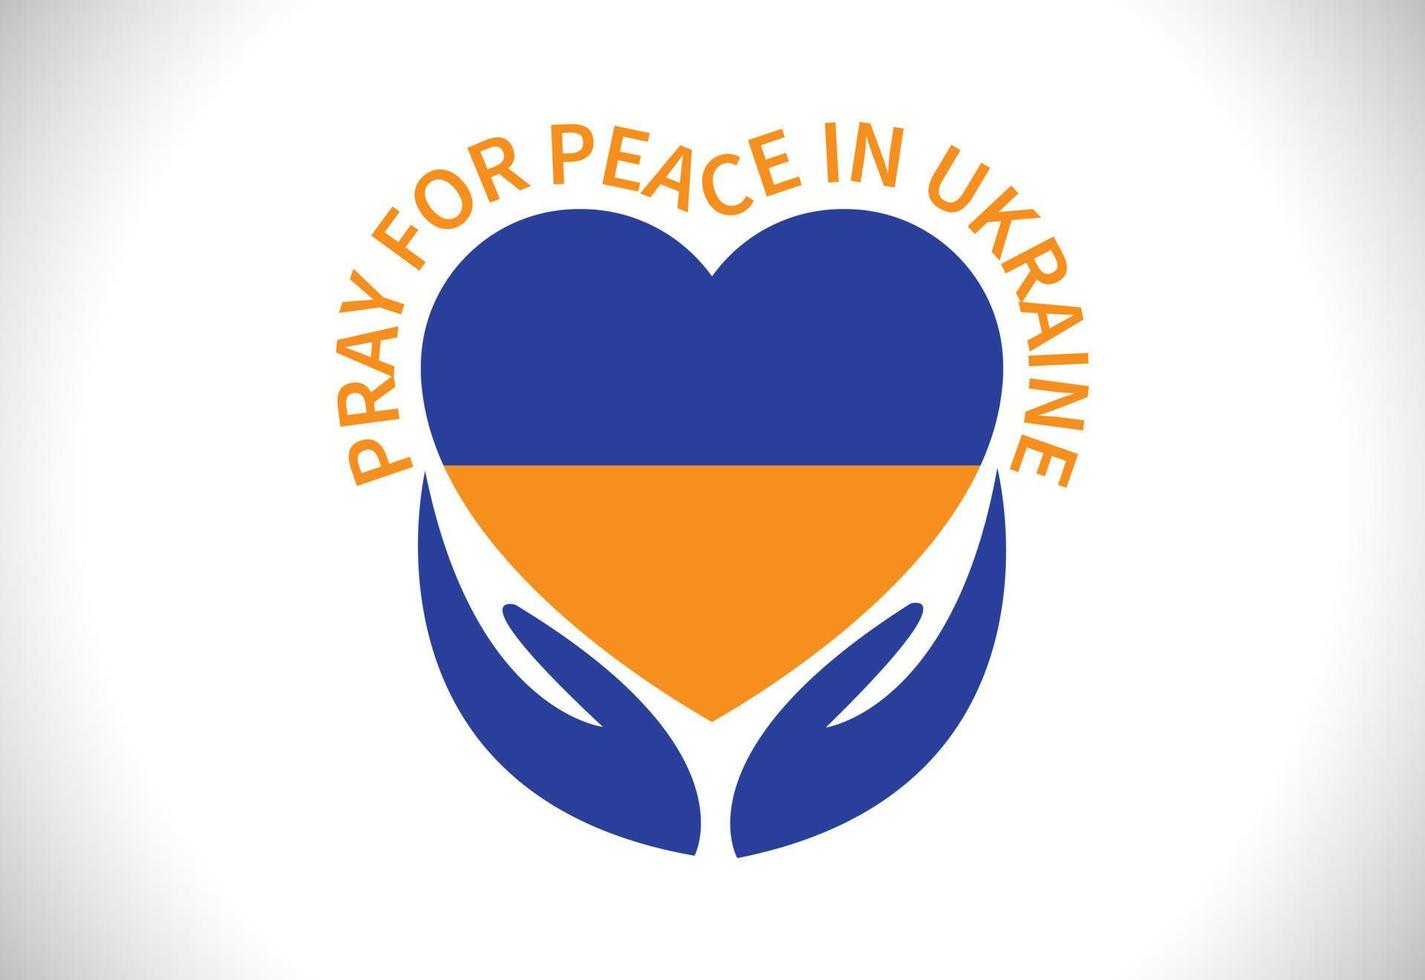 drapeau ukraine coeur et signe de la main avec priez pour la paix en ukraine texte vecteur